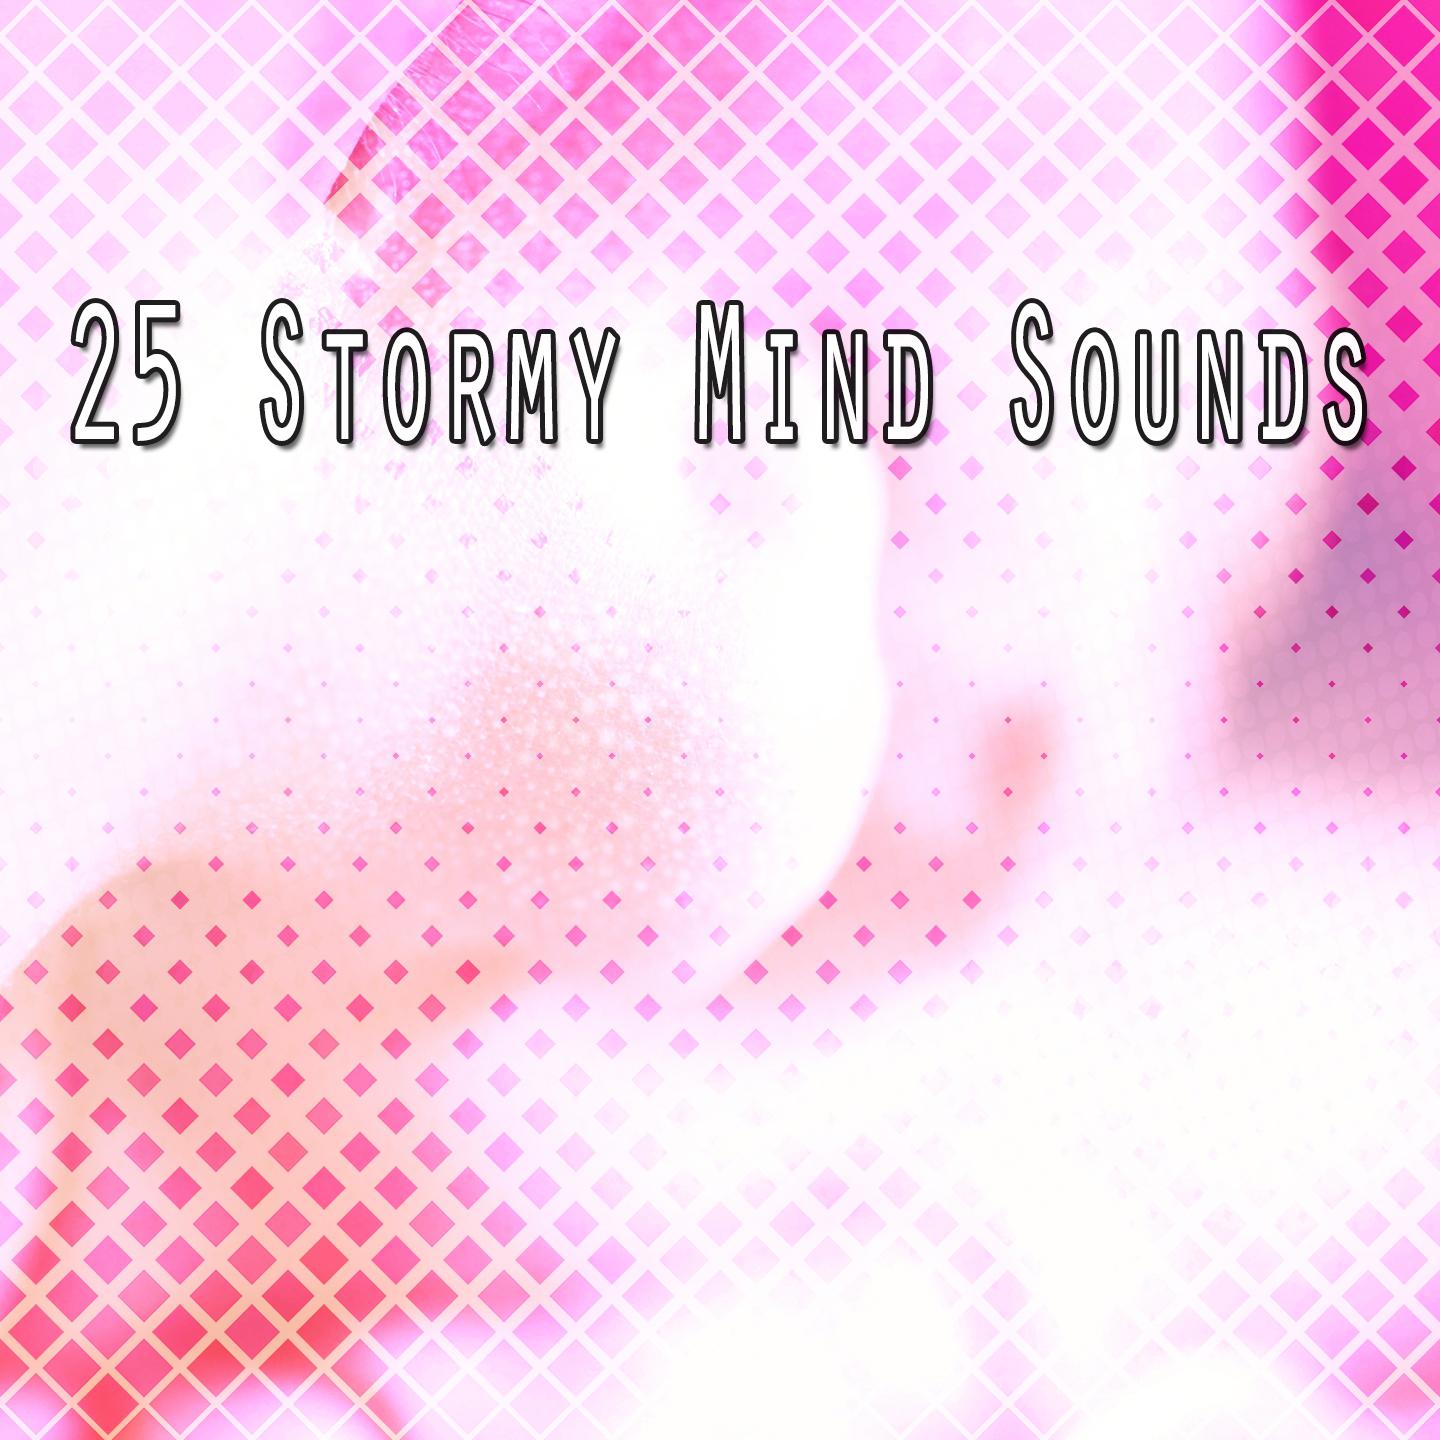 25 Stormy Mind Sounds